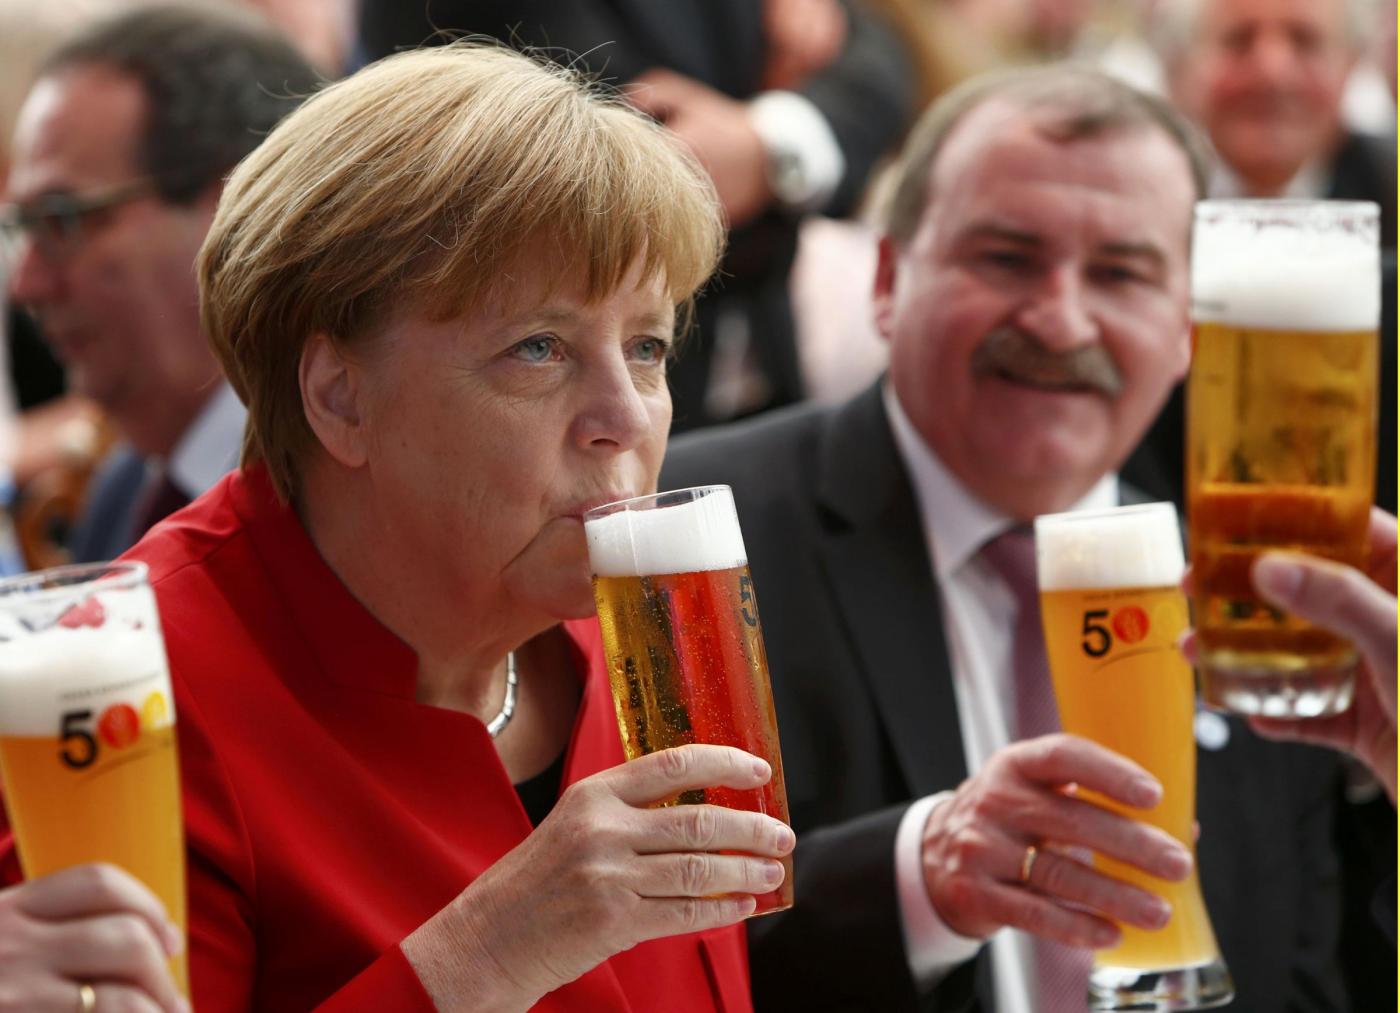 пиво германия